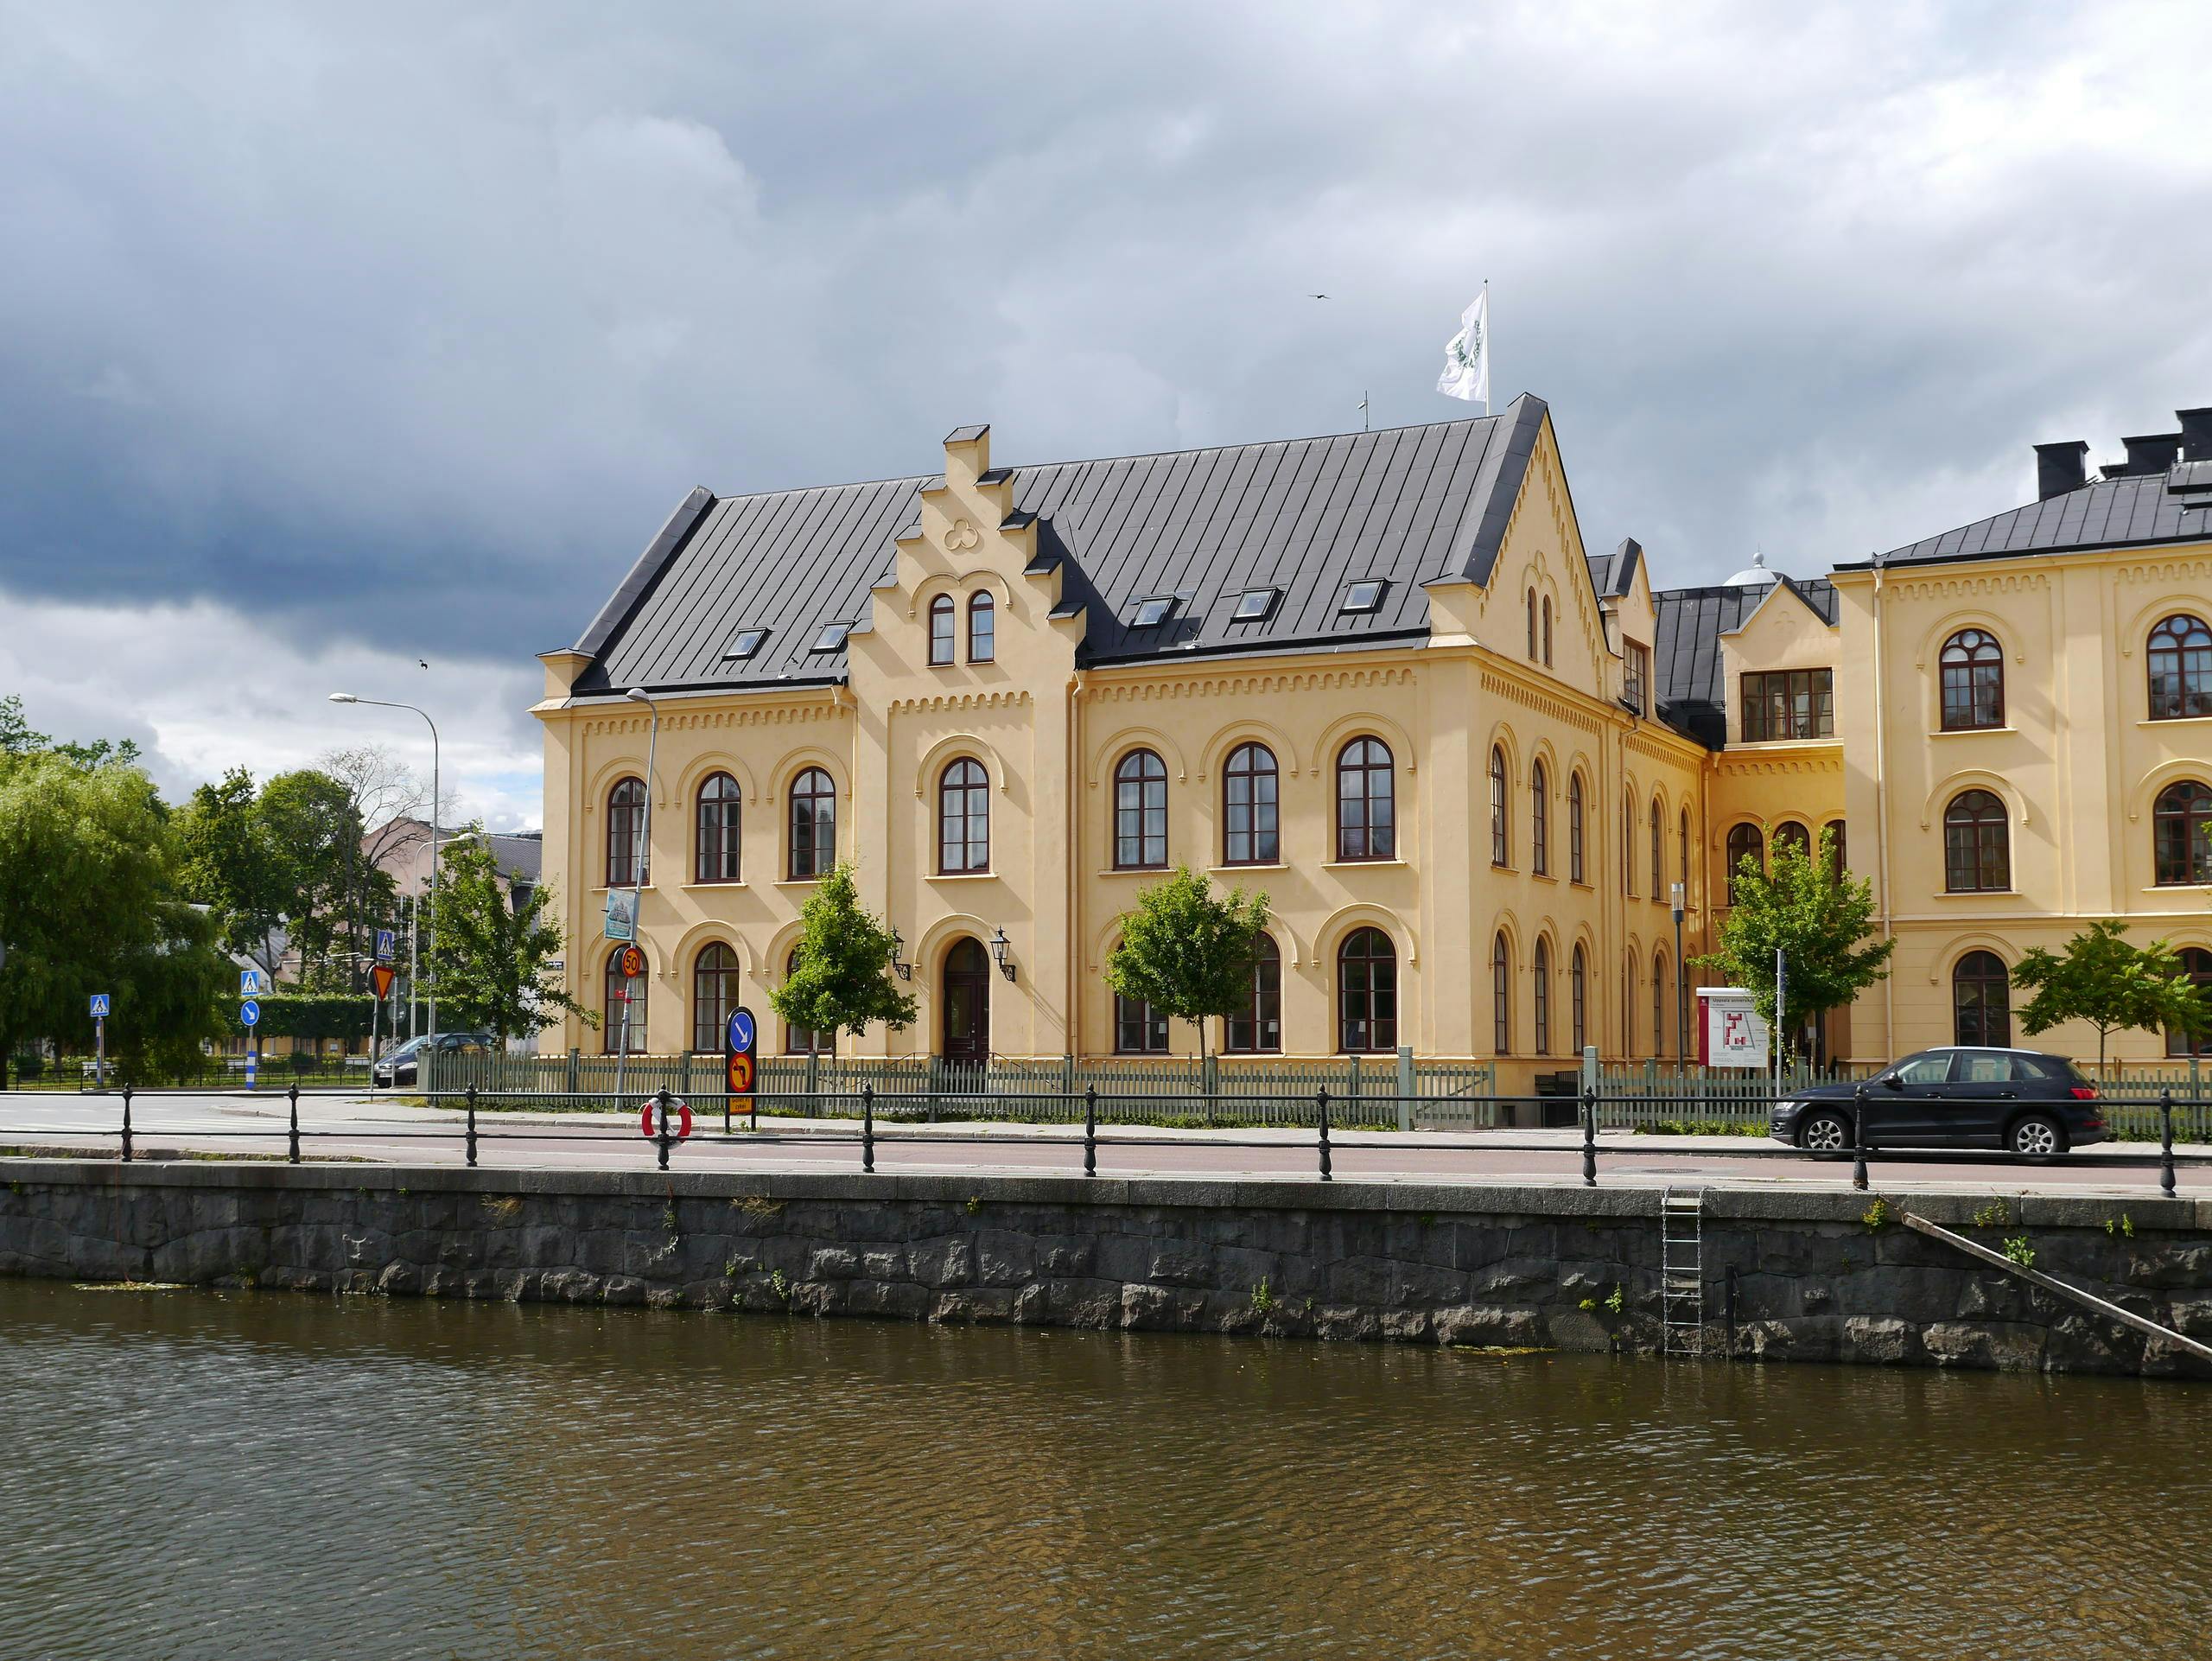 Guided walking tour of Uppsala University Musement